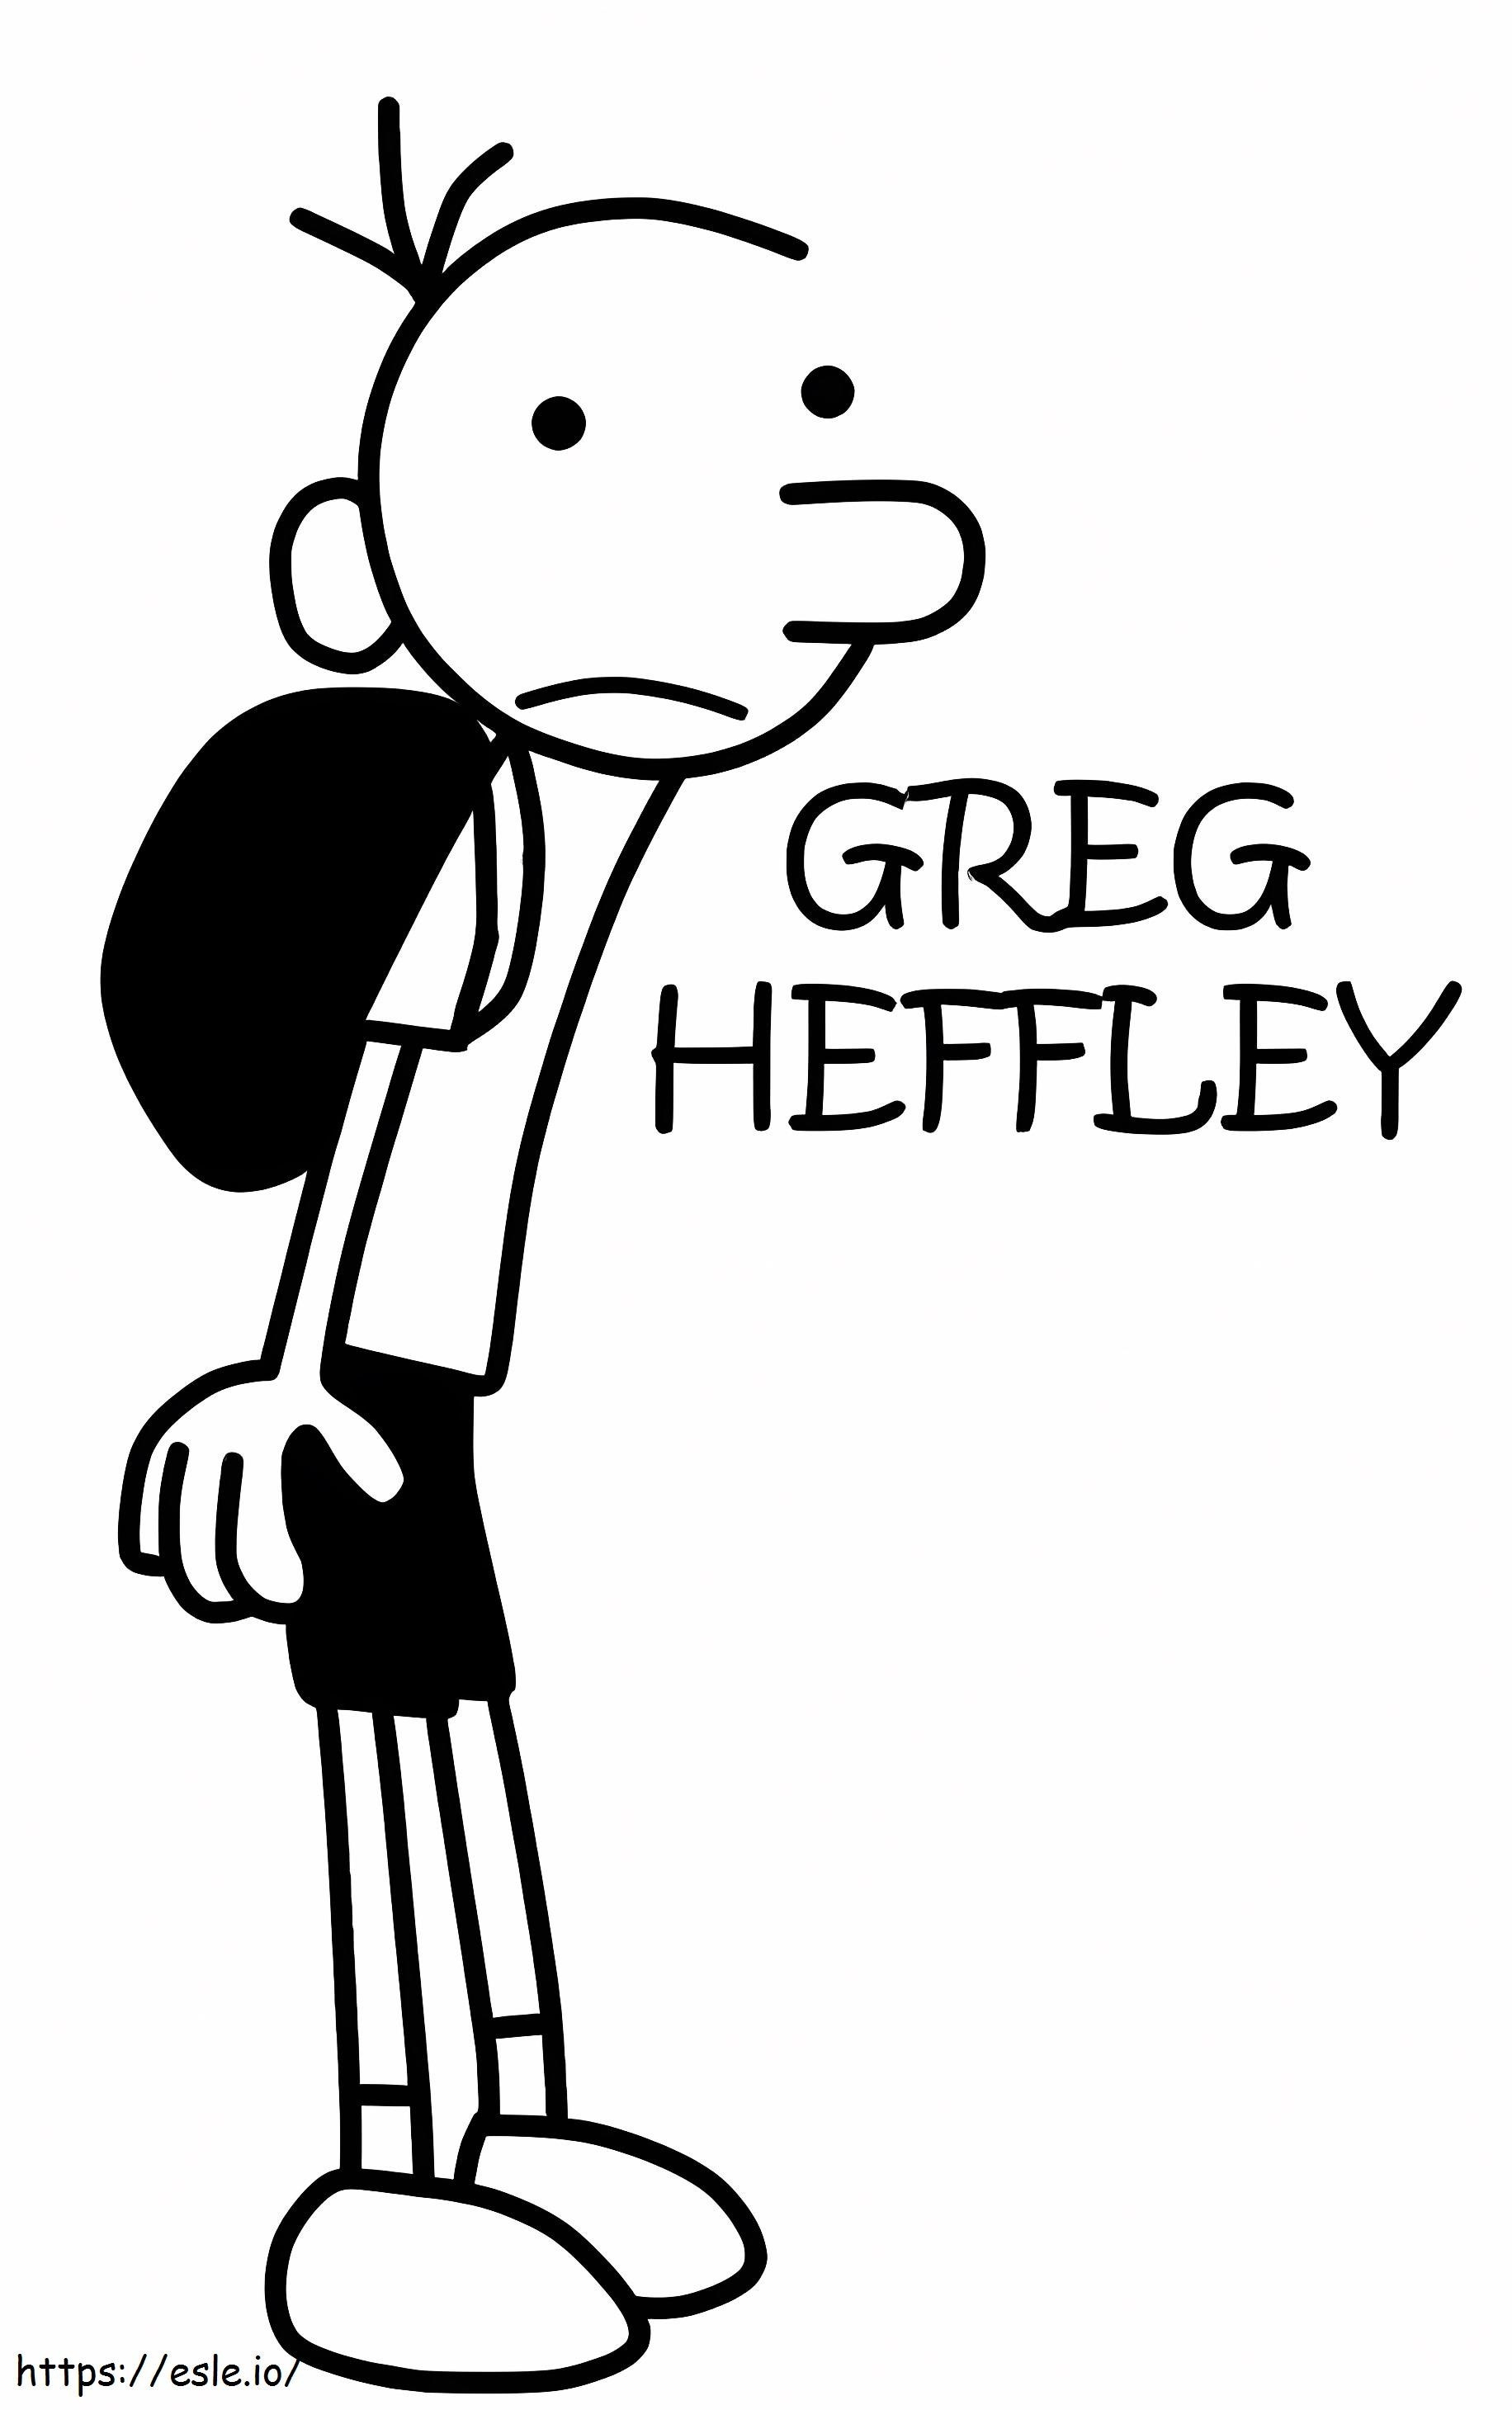 Greg Heffley boyama